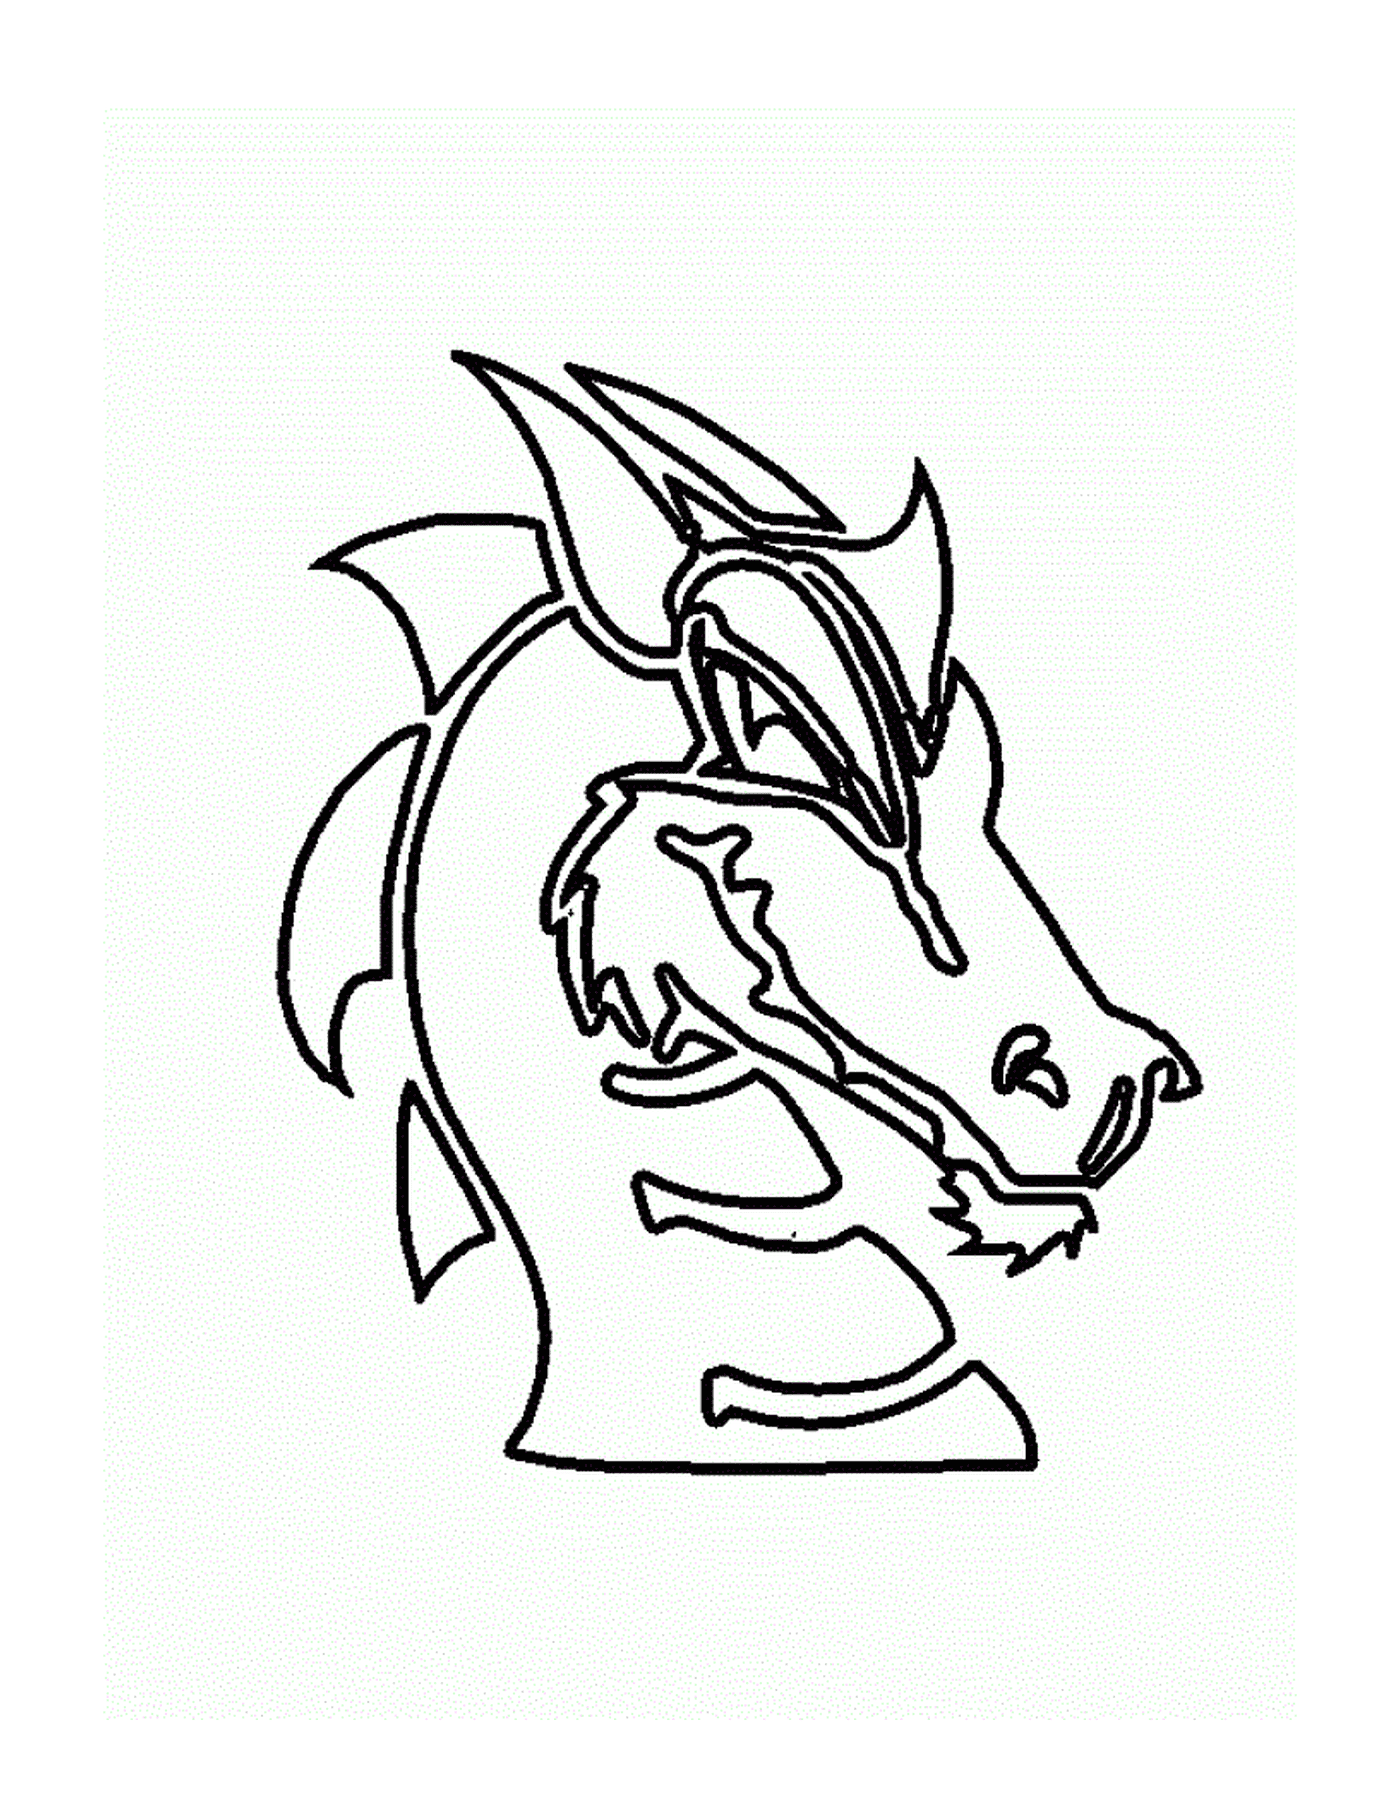  एक शक्तिशाली ड्रैगन का बड़ा सिर 